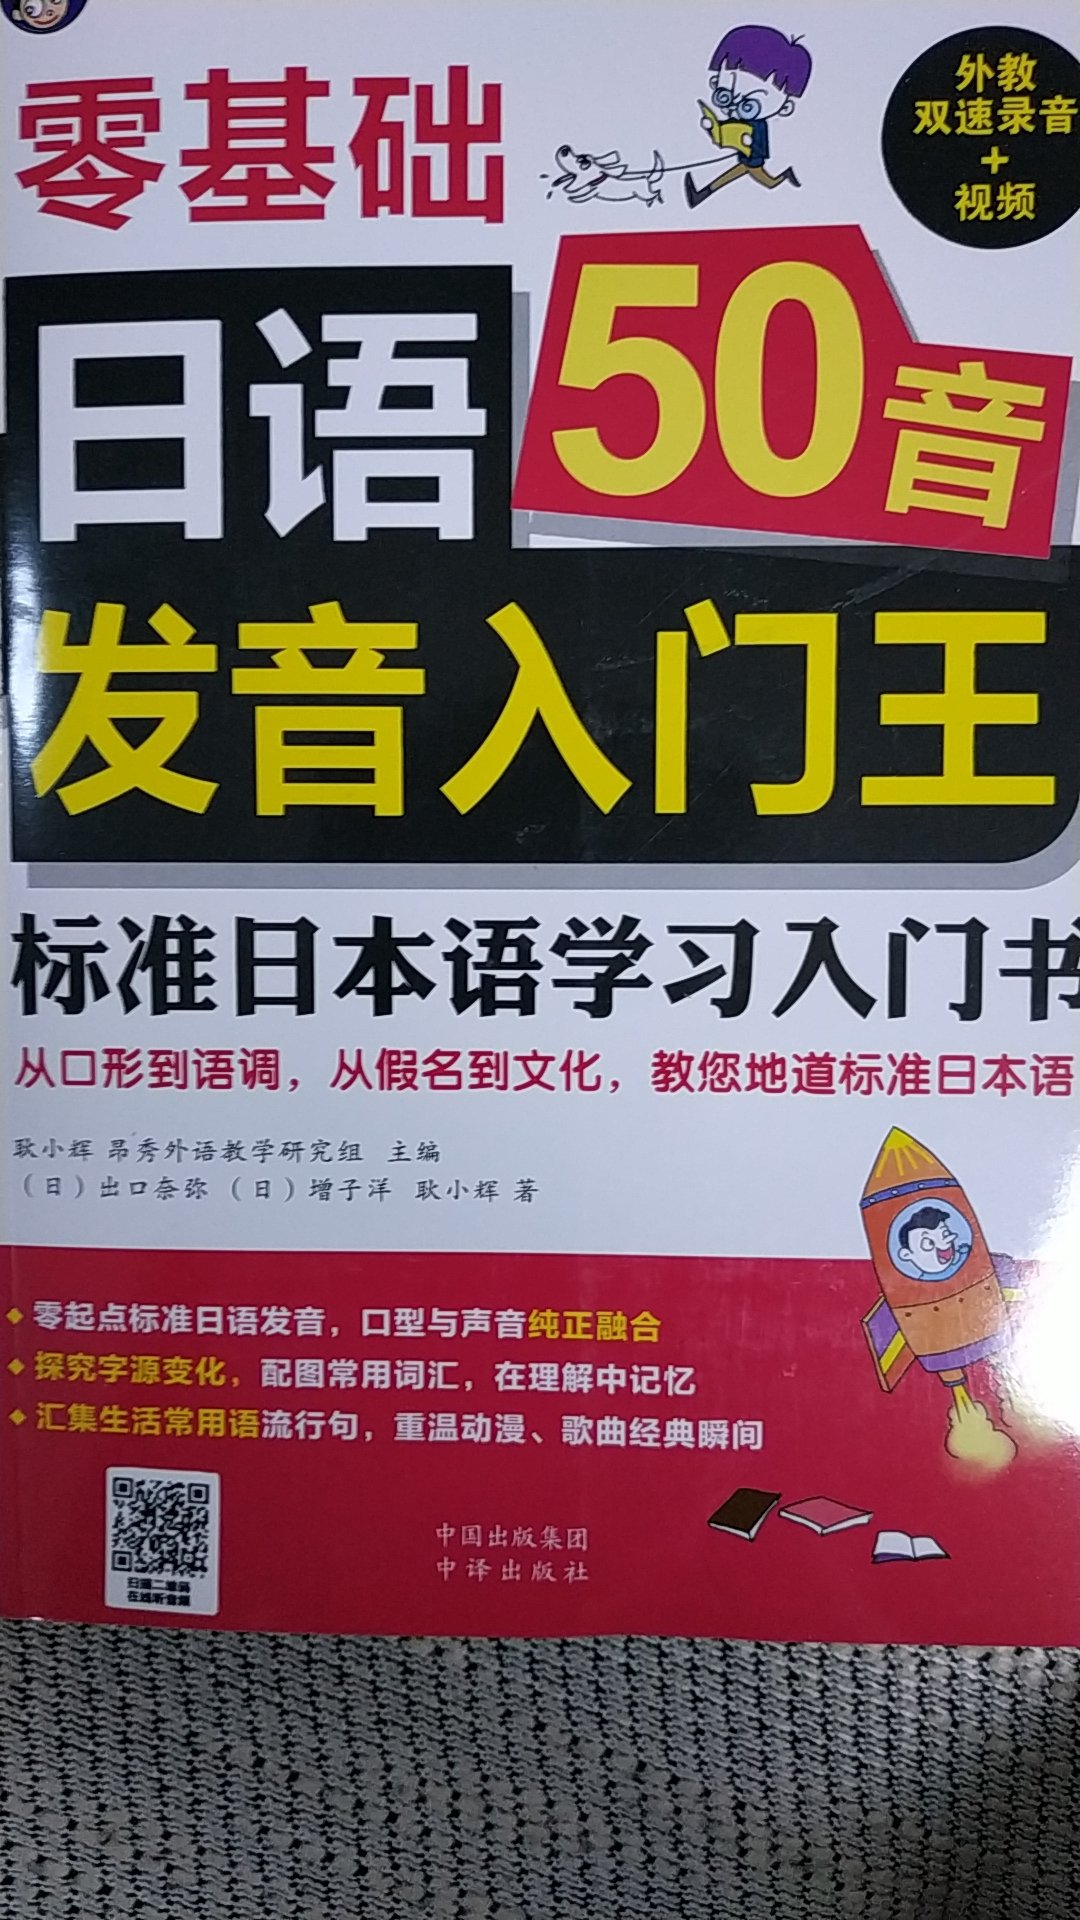 一直喜欢日语，这是非常好的一本书。